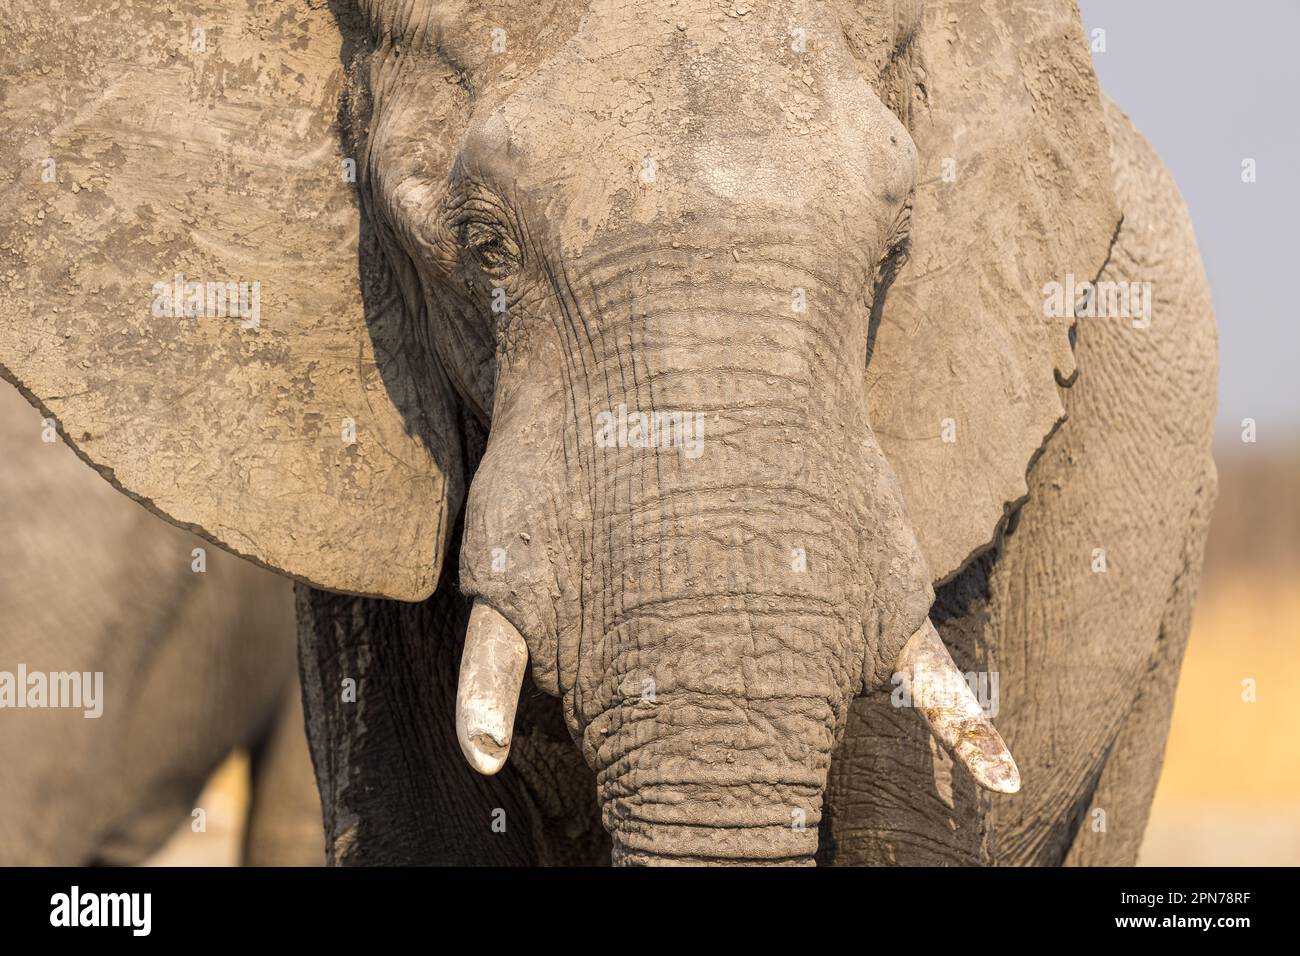 Nahaufnahme des Gesichts eines Elefanten, der mit erhobenem Rüssel geradeaus blickt Stockfoto